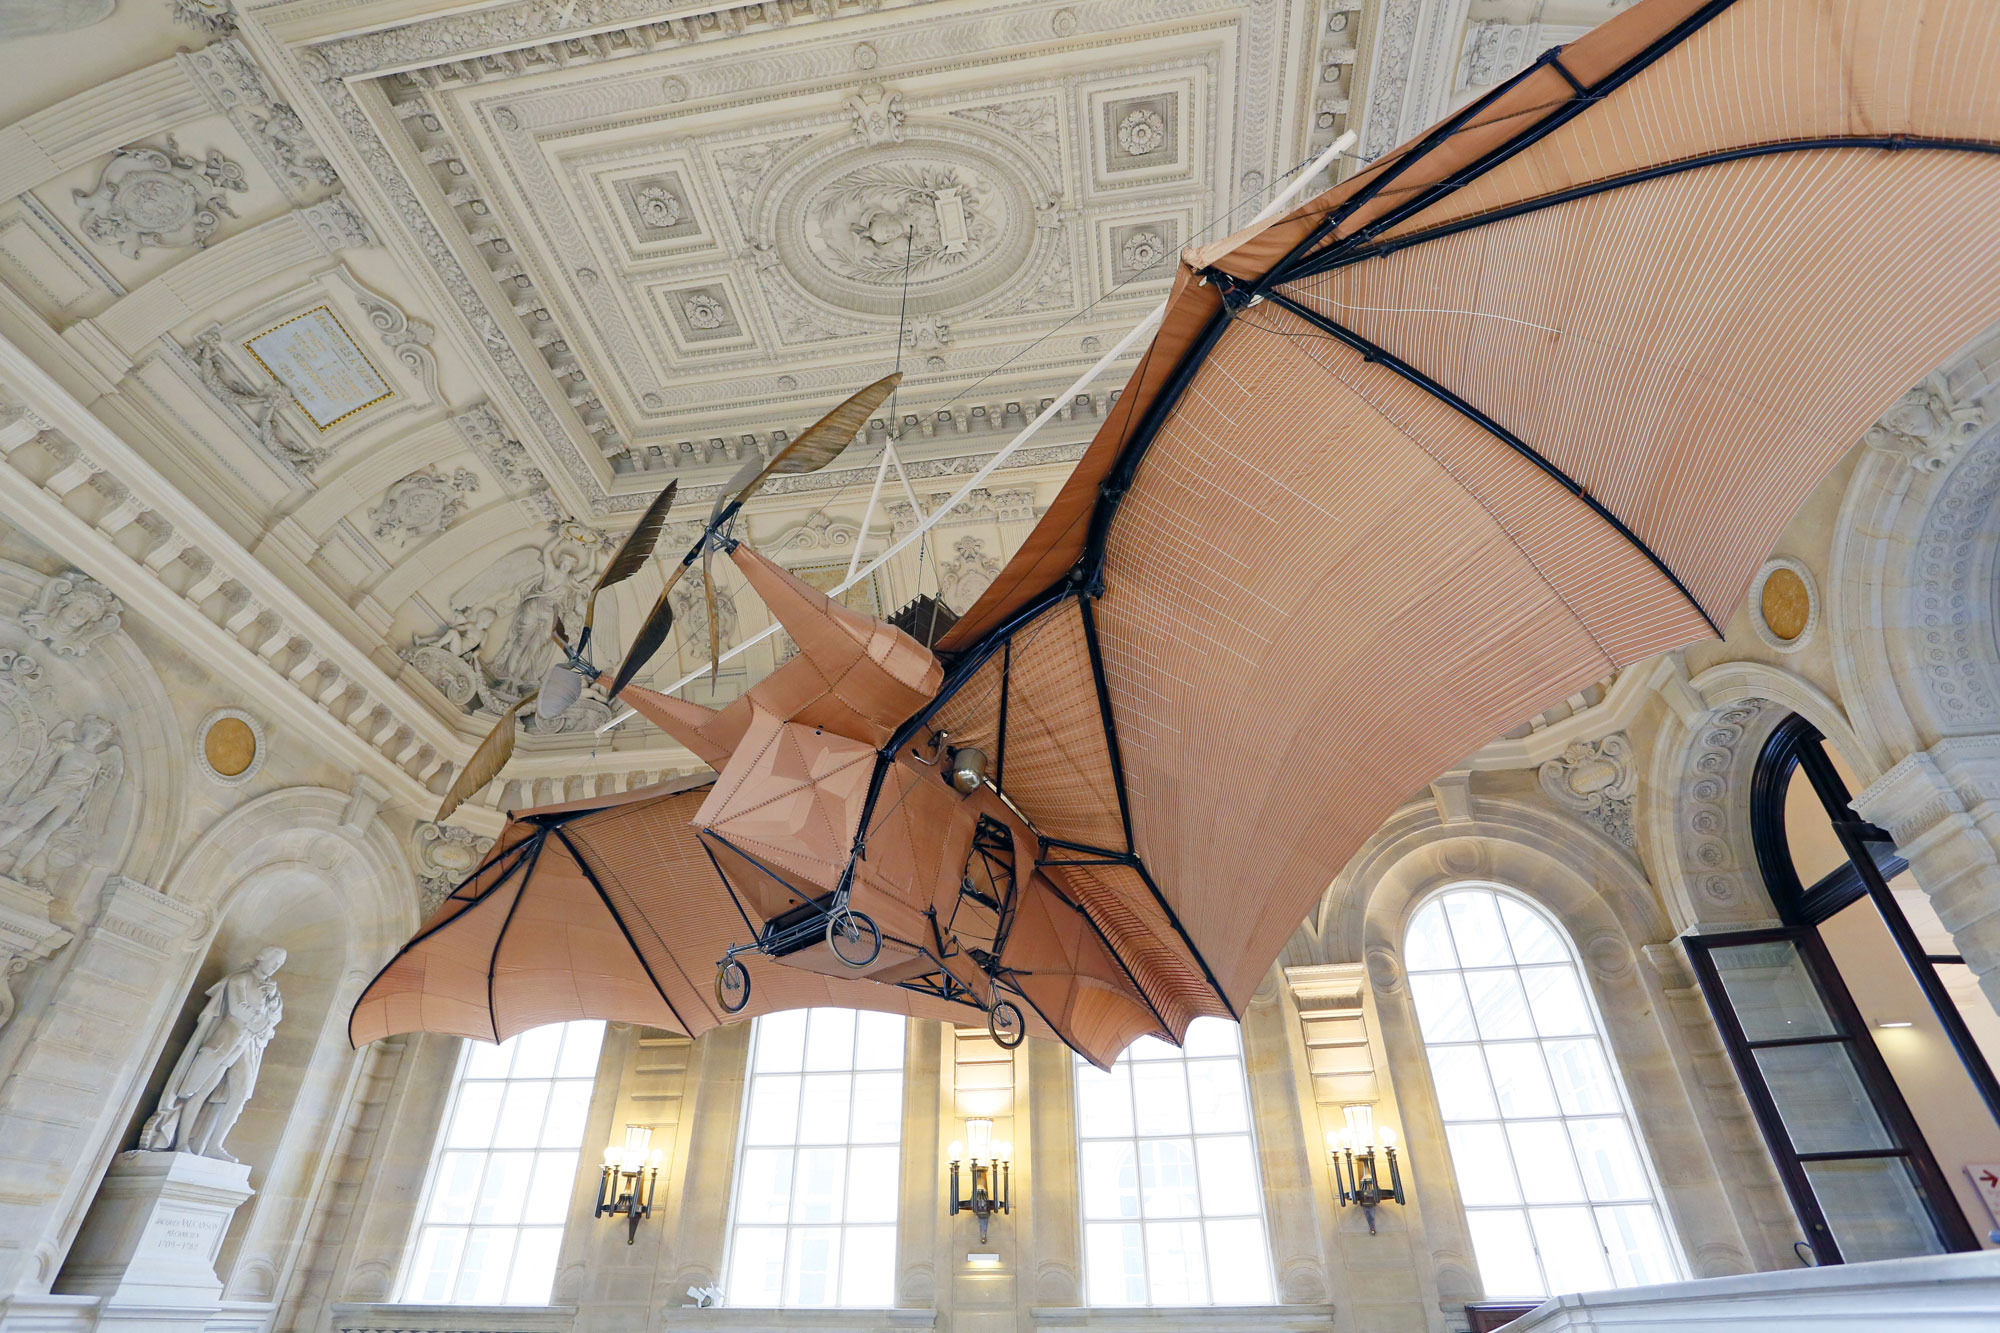 S'inspirer du vivant pour innover n'est pas nouveau, comme en témoigne cet avion "chauve-souris" imaginé au 19e siècle.